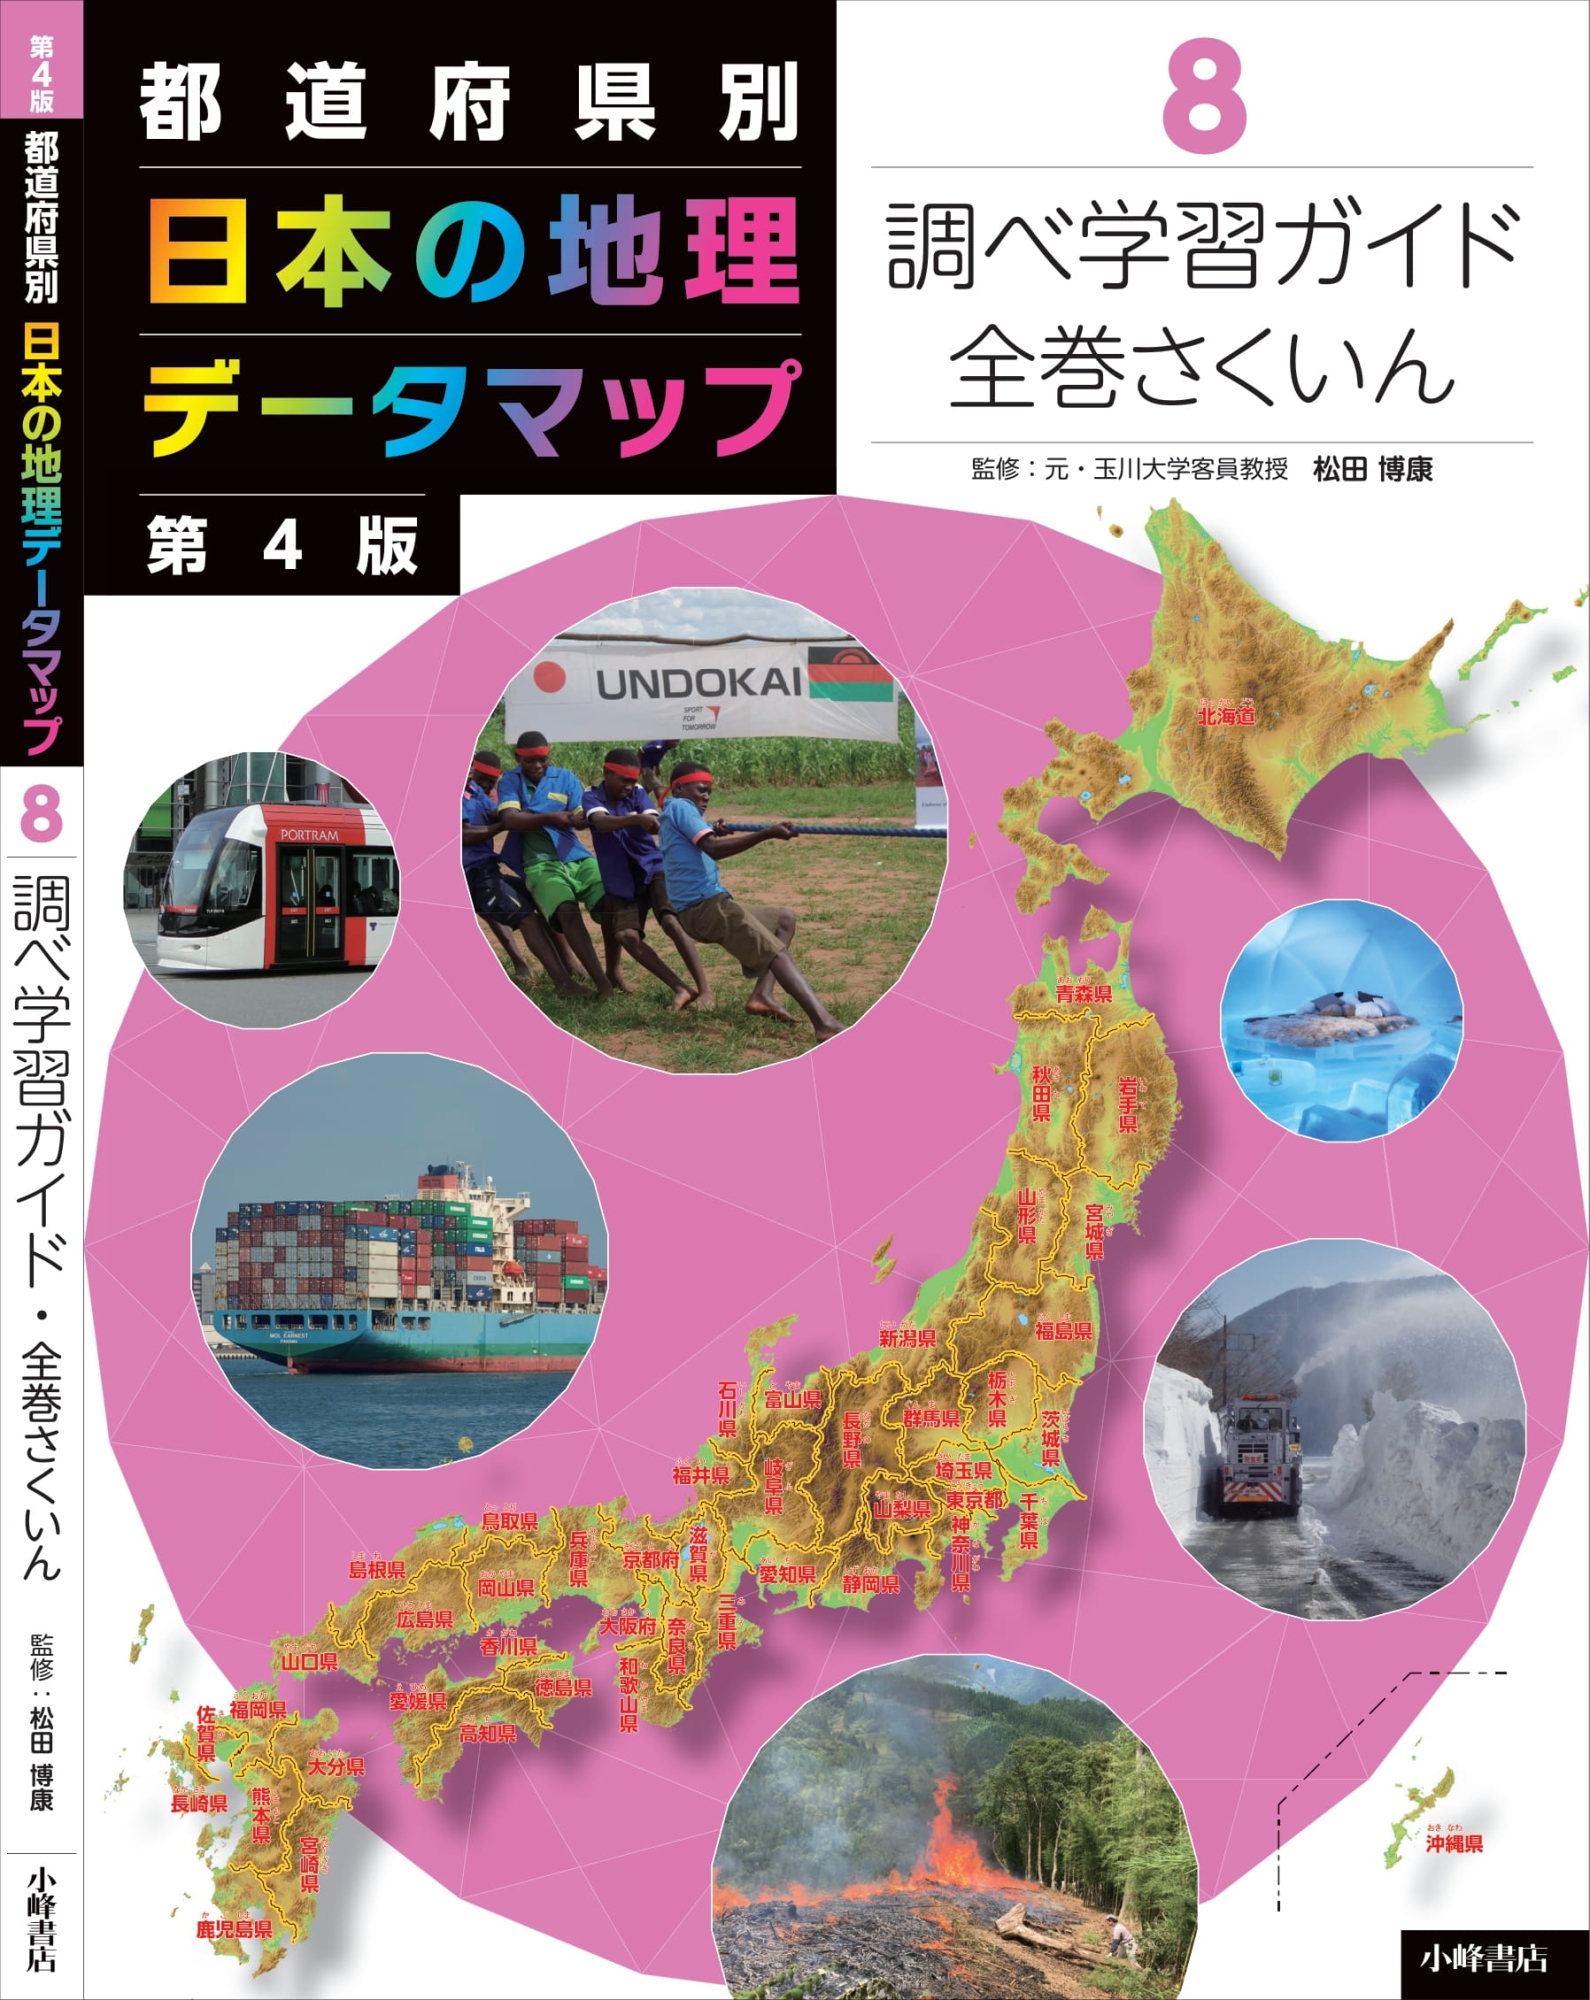 都道府県別日本の地理データマップ 8 第4版 調べ学習ガイド・全巻 